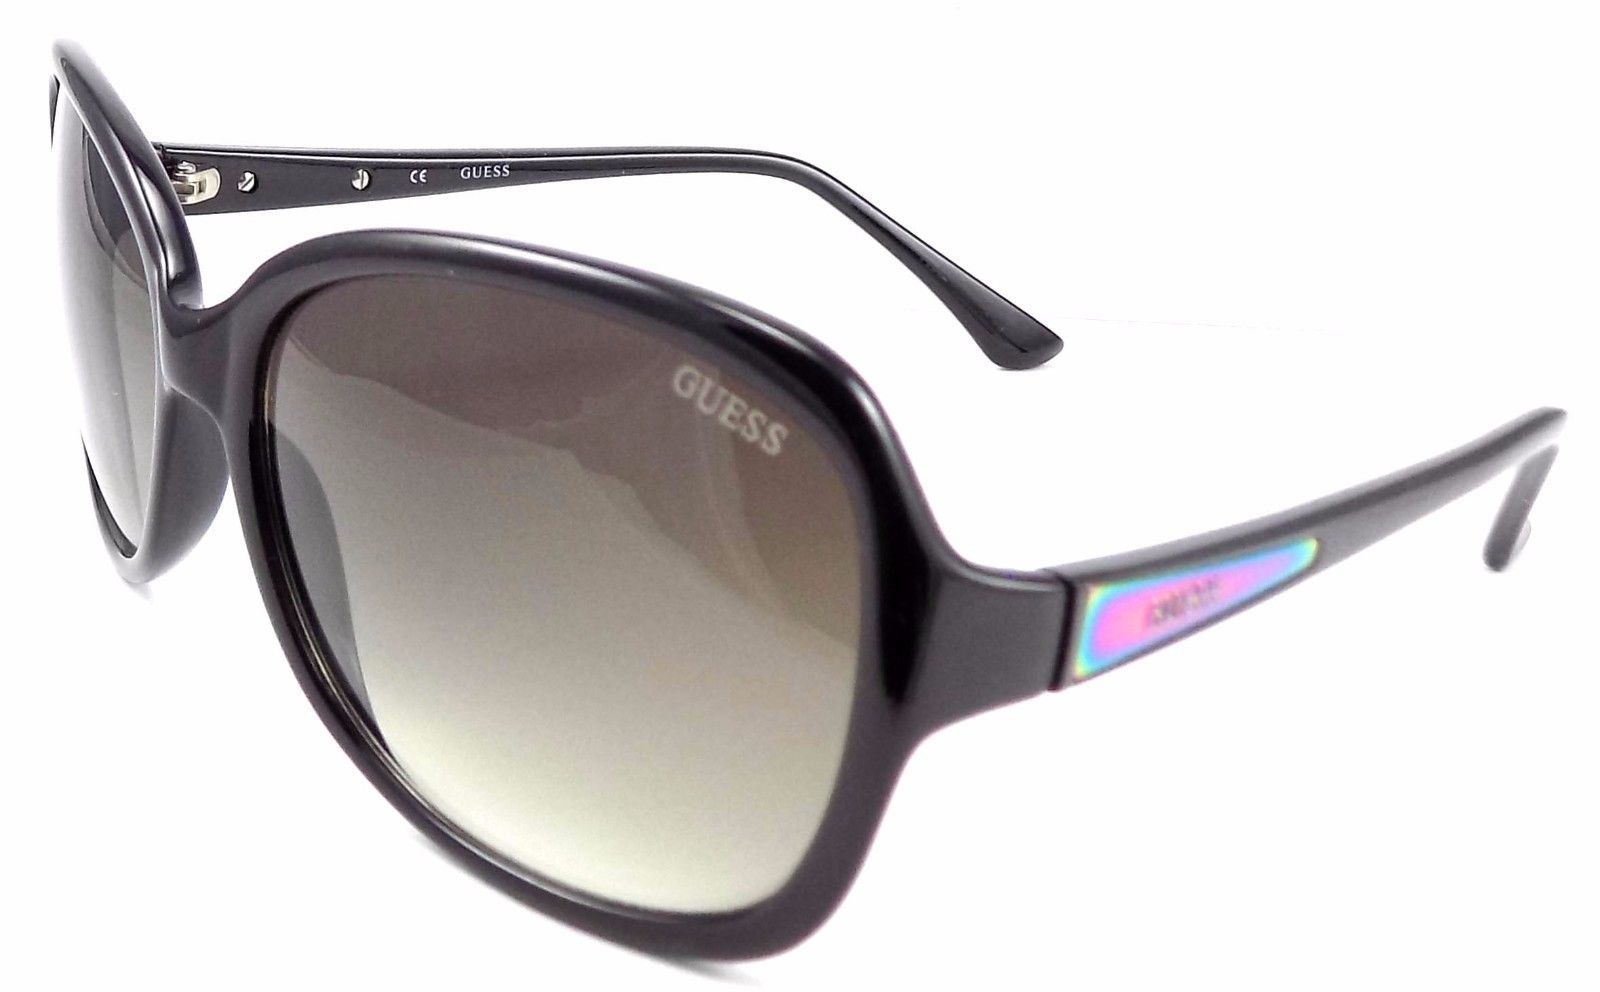 1-GUESS GU7345 BLK-35 Women's Sunglasses 61-17-135 Black Frame / Brown Gradient-715583640405-IKSpecs